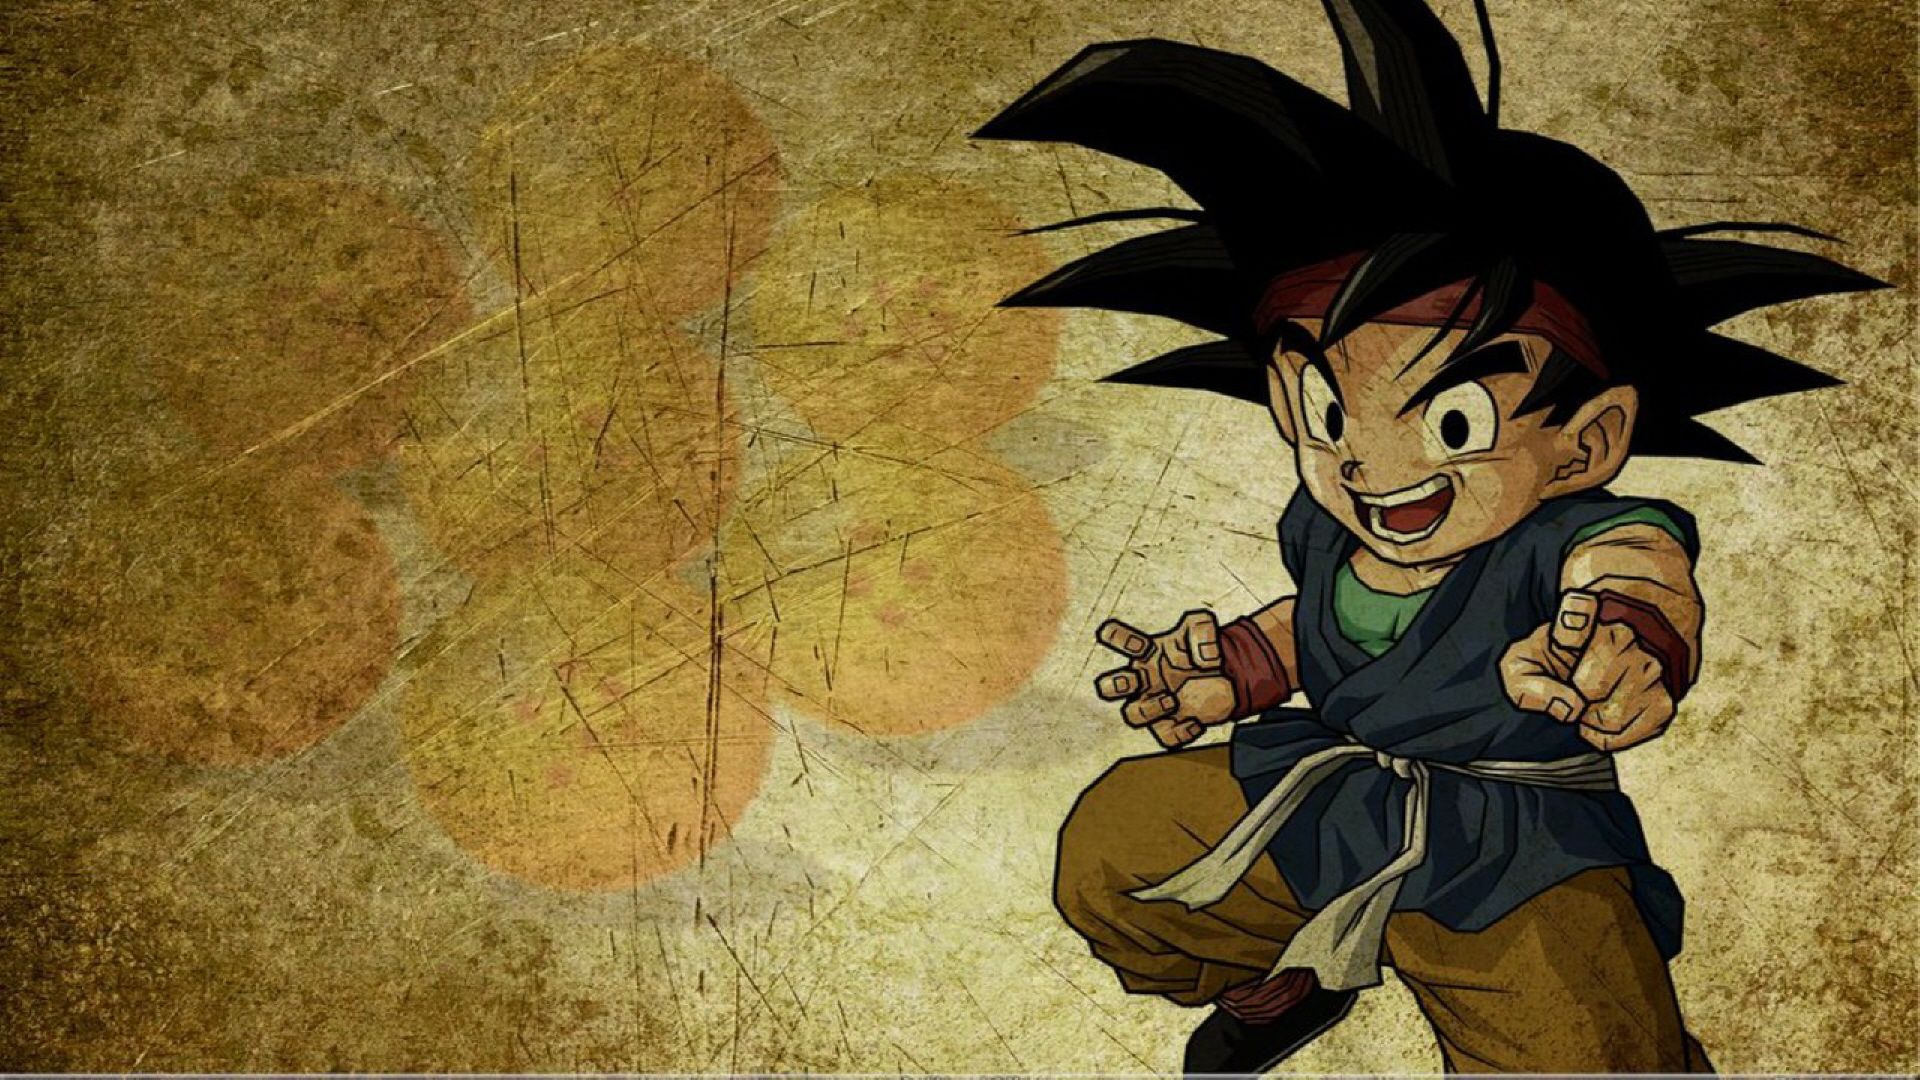 Dragon Ball Z Wallpaper HD Goku free download. Manga mignon